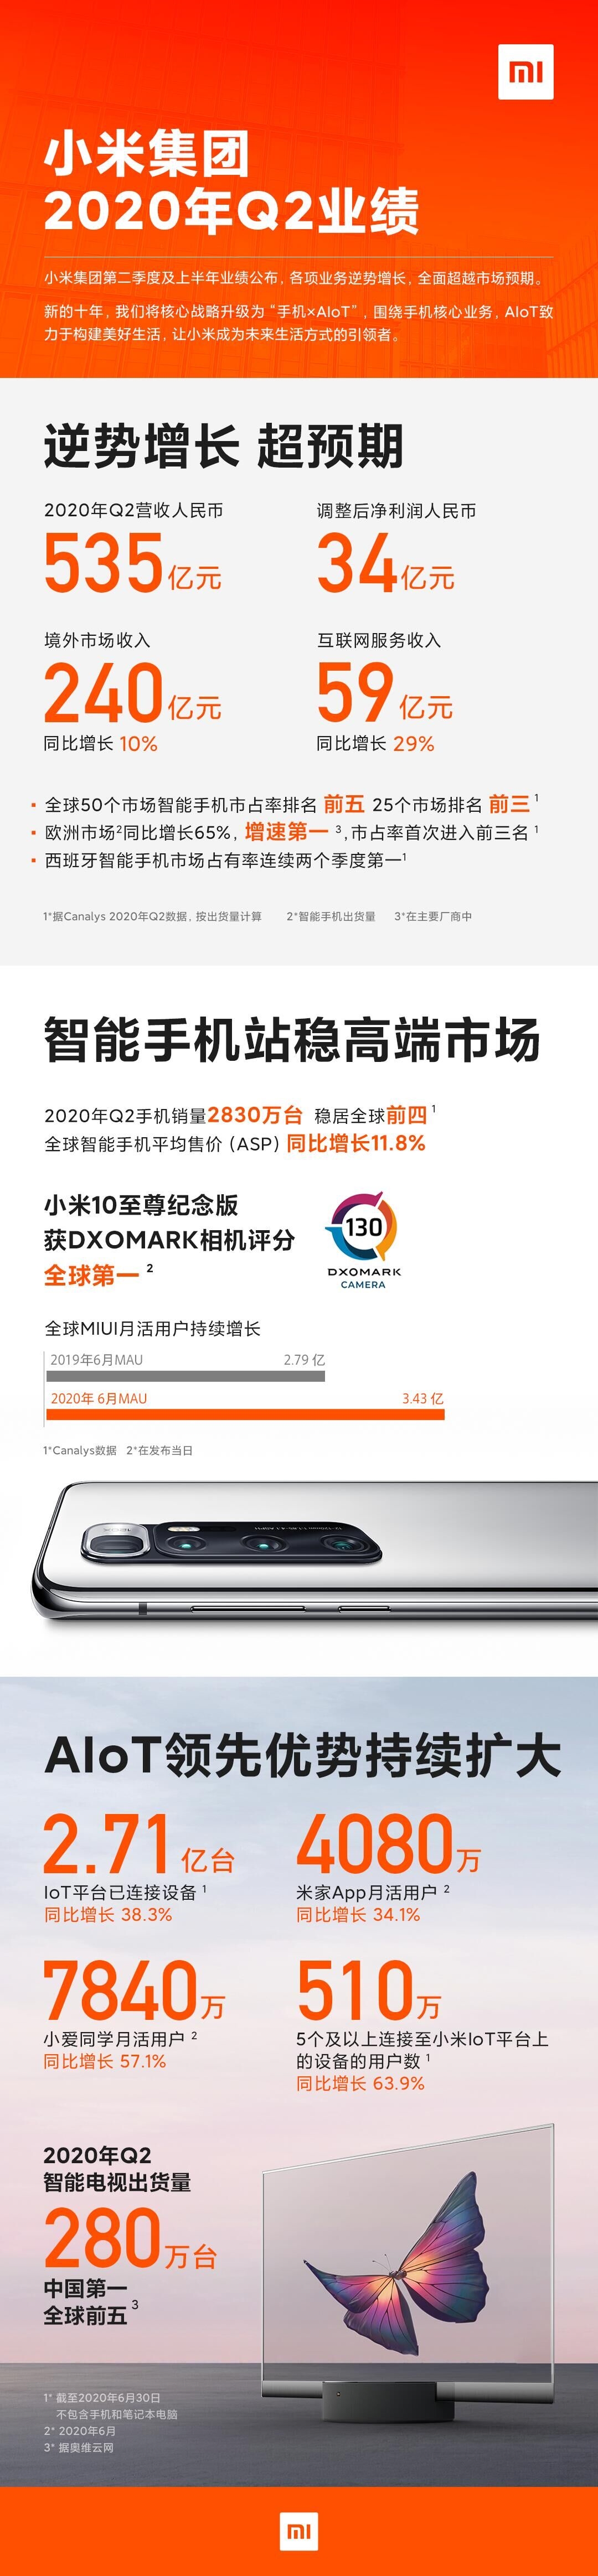 小米Q2财报发布：手机站稳高端、出货2830万部